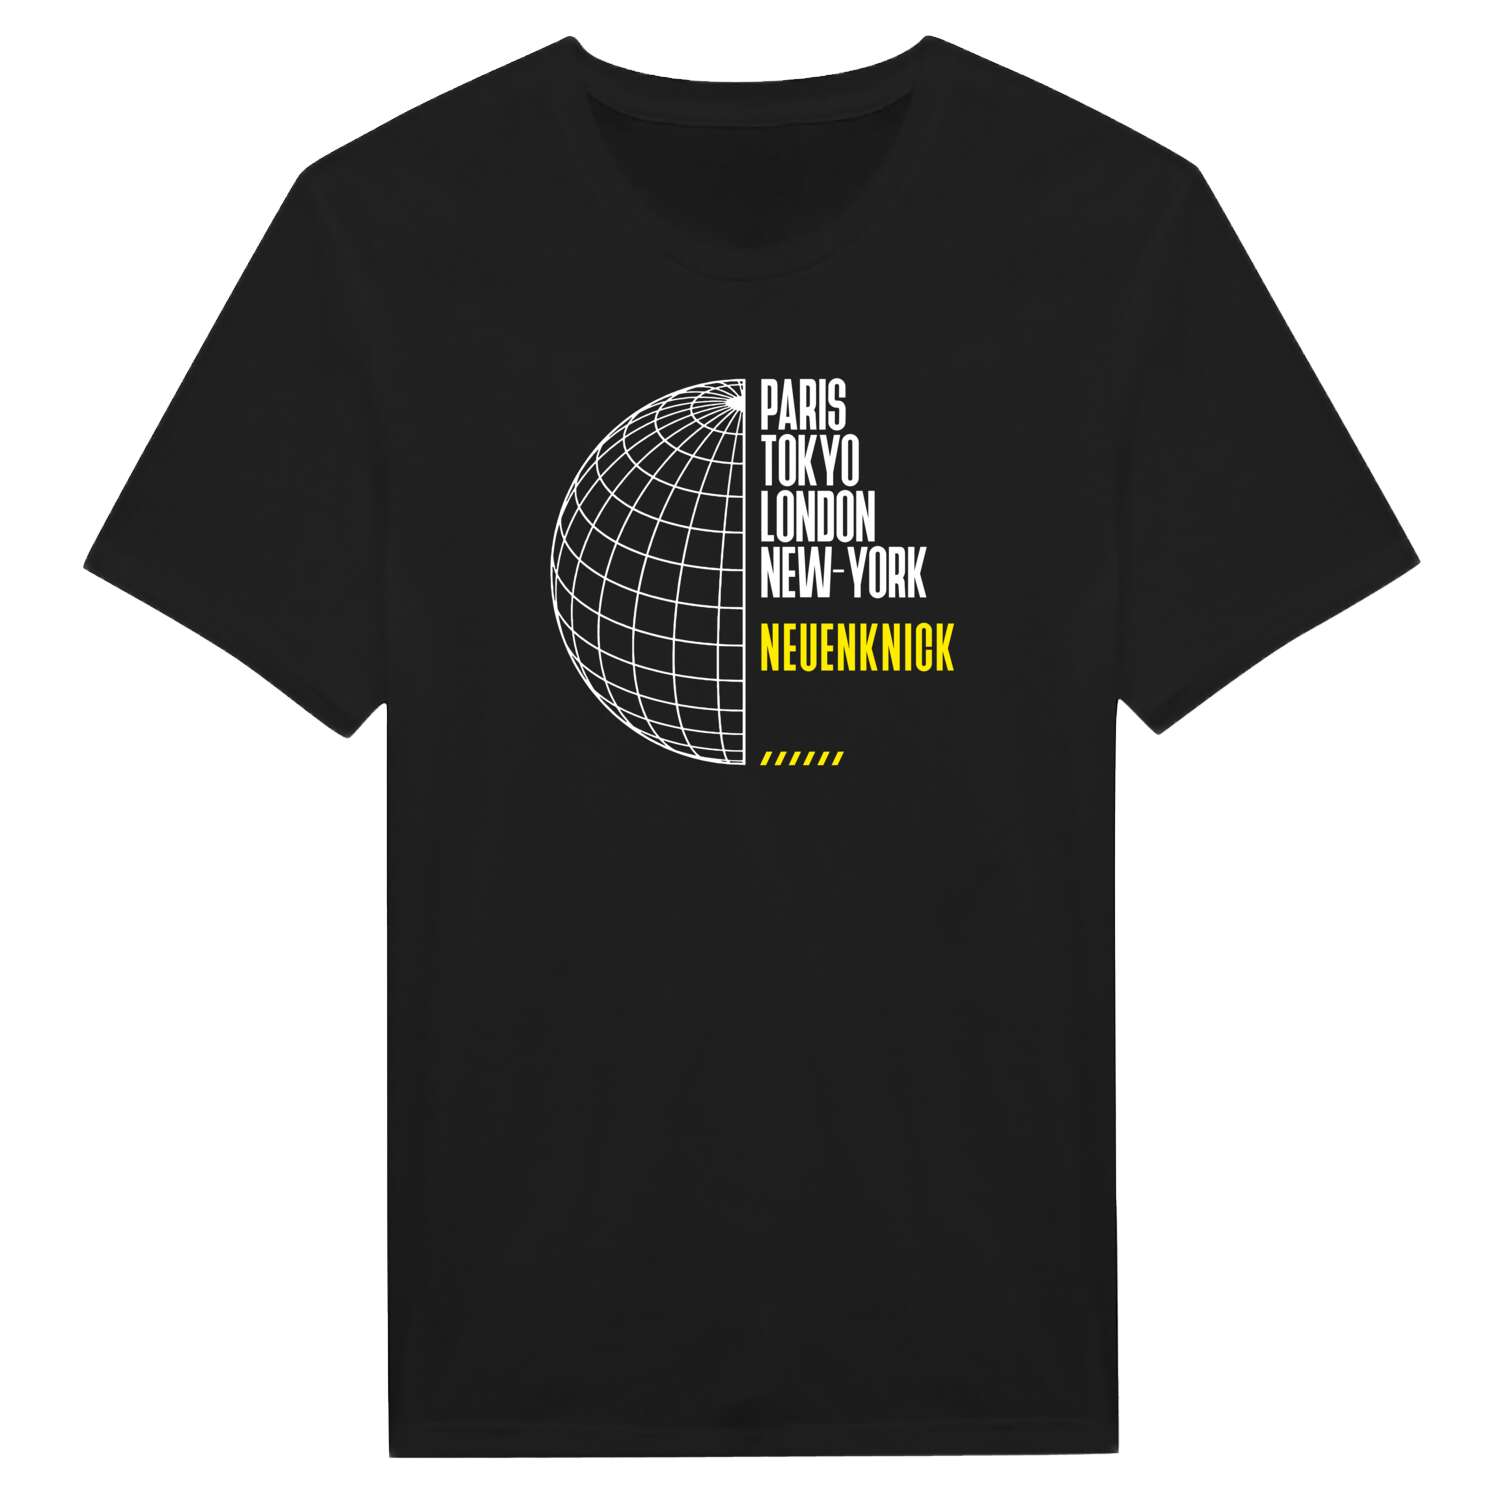 Neuenknick T-Shirt »Paris Tokyo London«